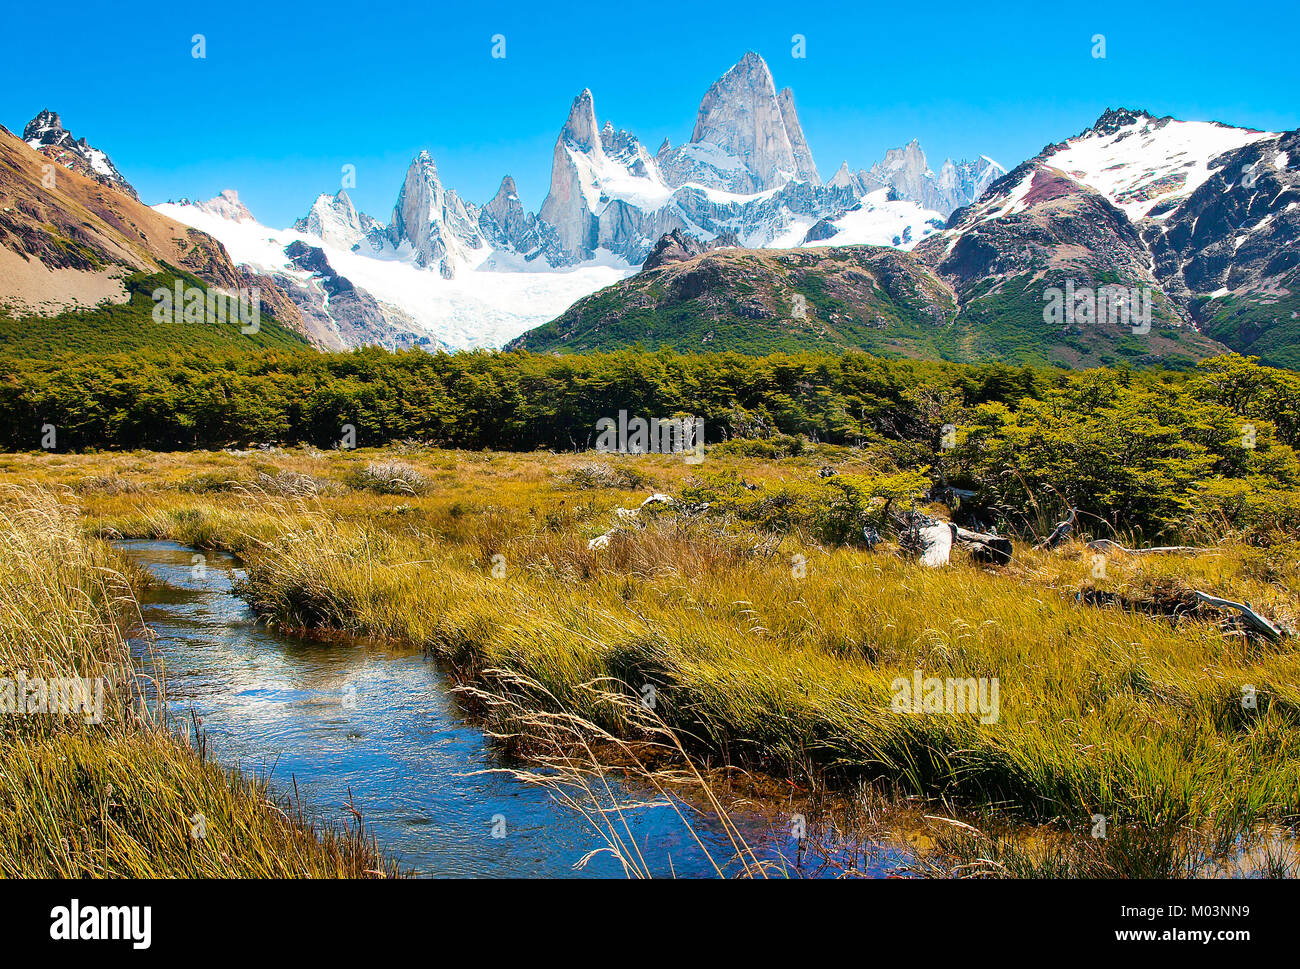 Bellissimo paesaggio con Mt Fitz Roy nel parco nazionale Los Glaciares, Patagonia, Argentina, Sud America Foto Stock